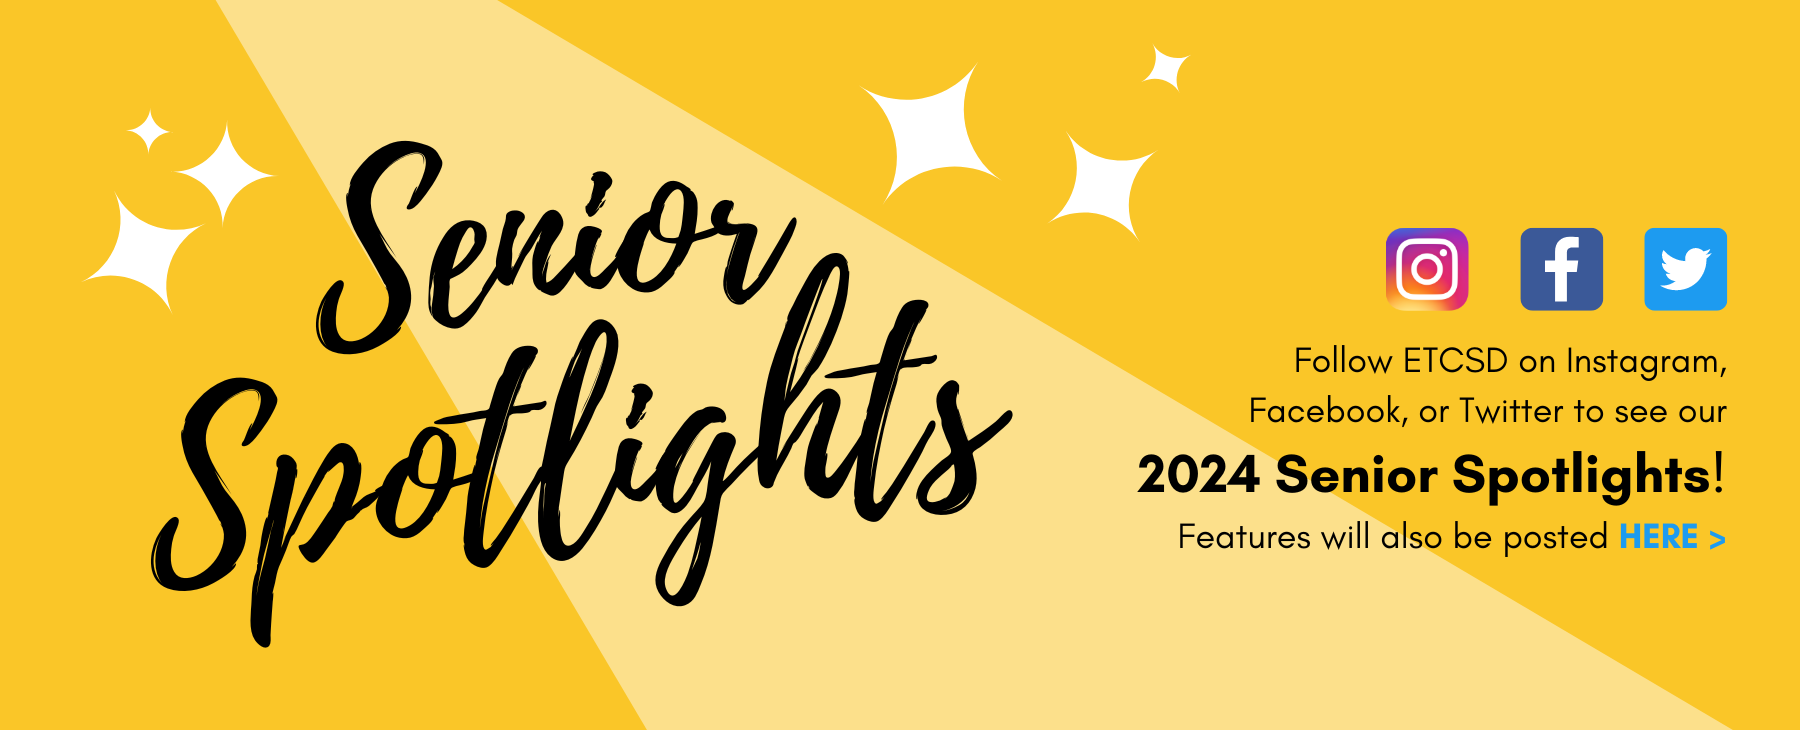 Senior Spotlights 2024